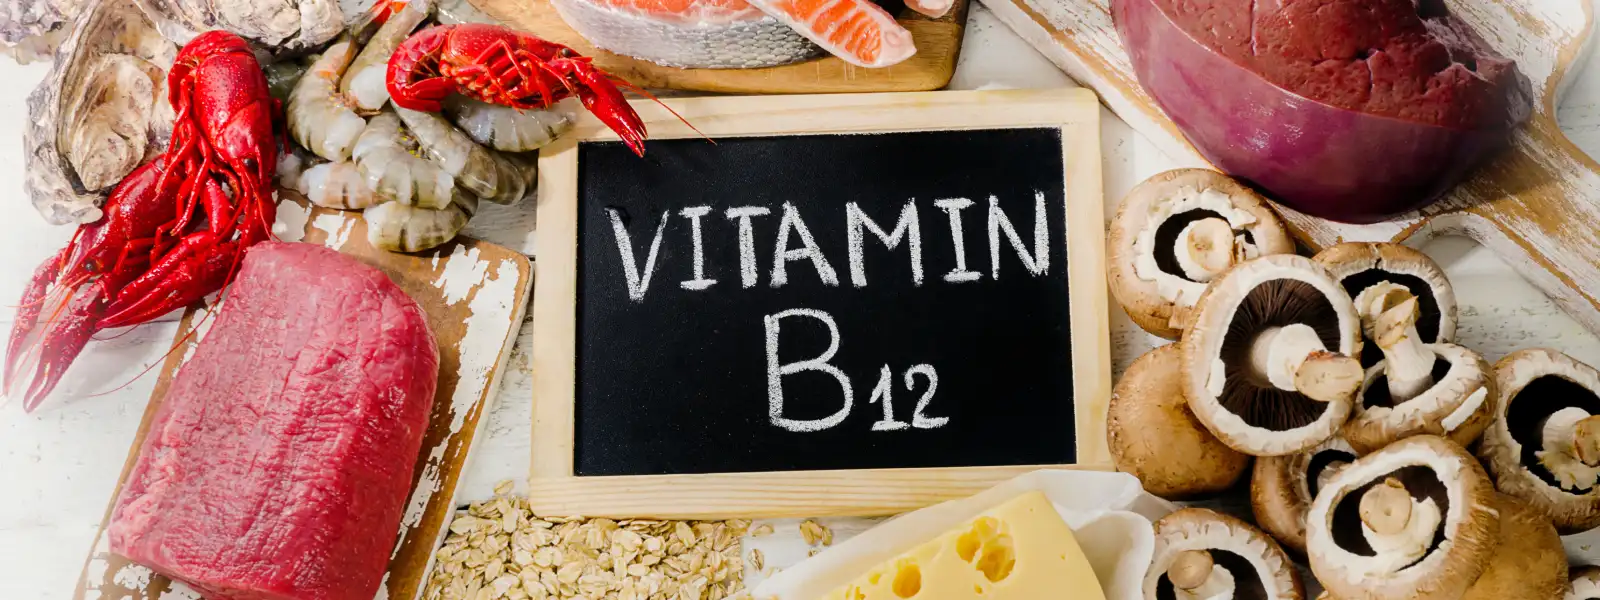 B12 Vitamini Eksikliği Belirtileri Nelerdir?